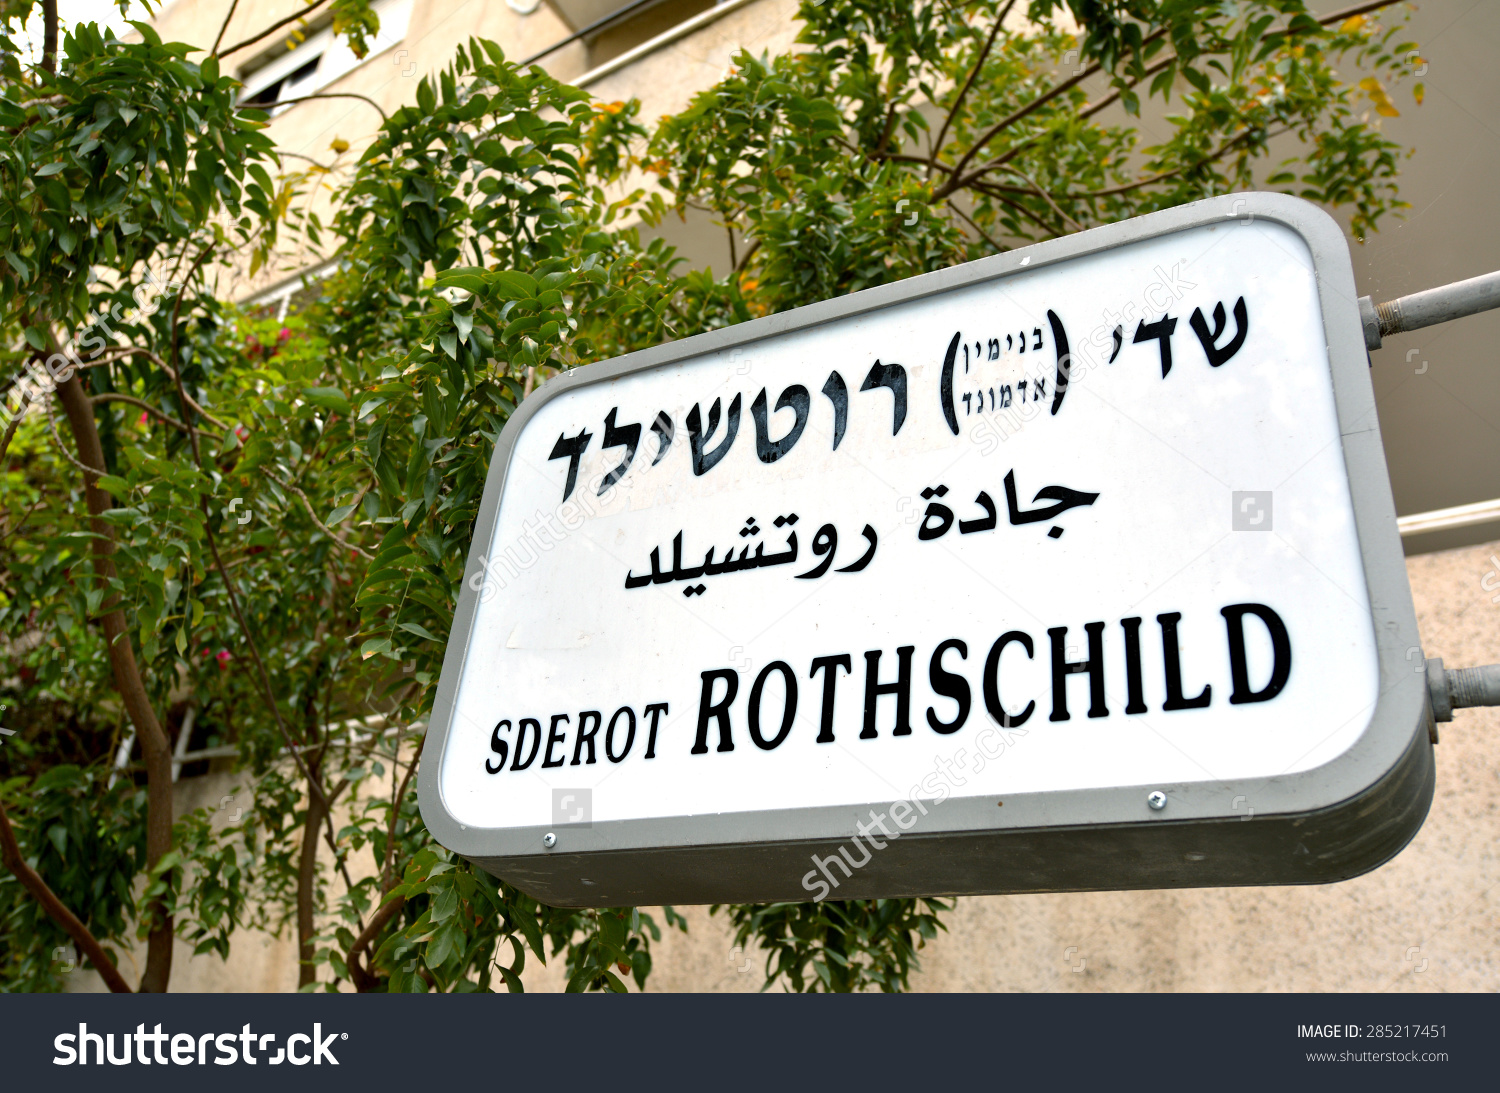 stock-photo-tel-aviv-isr-apr-rothschild-boulevard-street-sign-in-tel-aviv-israel-it-s-one-of-the-285217451